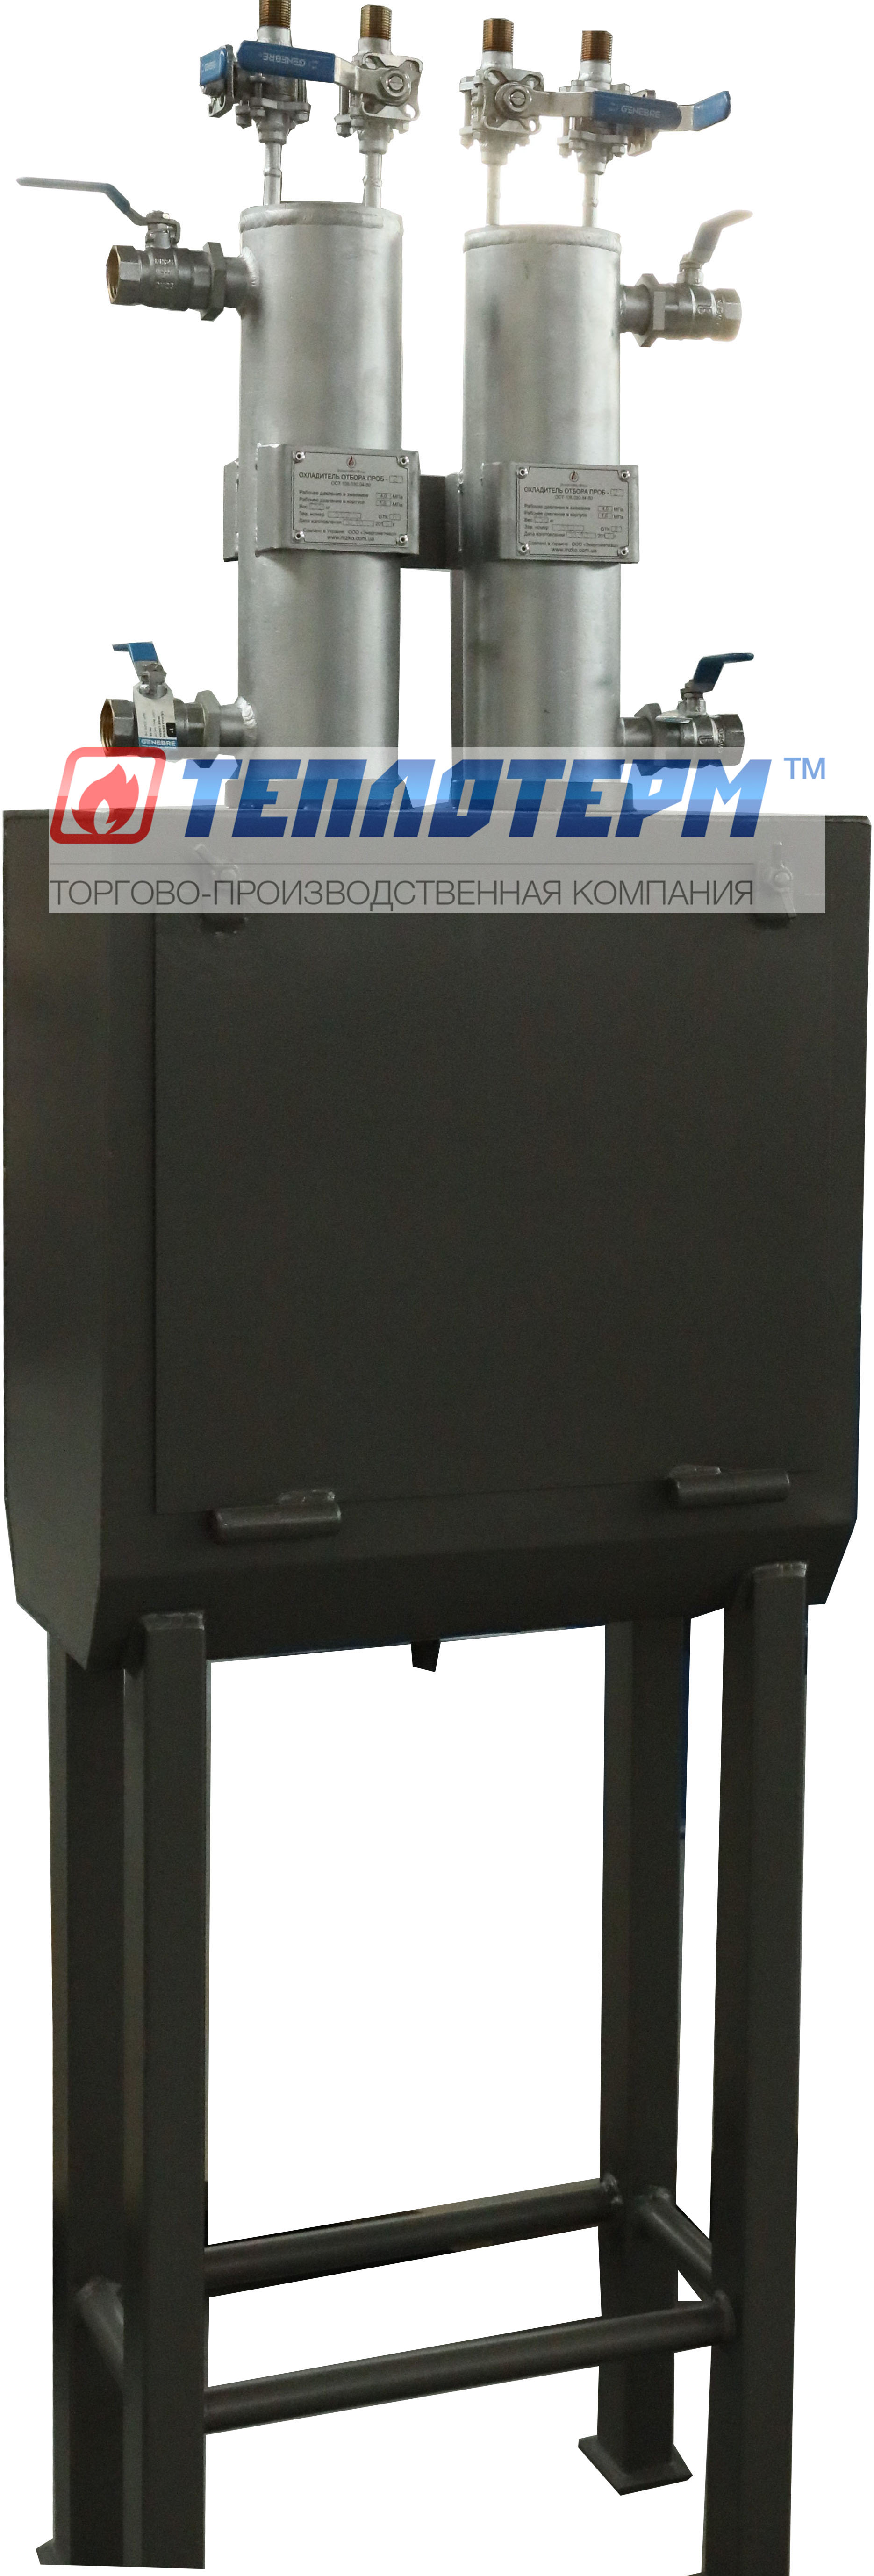 Охладитель пробы воды. Охладитель для отбора проб сетевой воды САТЭКС. Холодильник отбора проб двухточечный. Охладитель отбора проб VYC 560-DRM-1 монтаж.